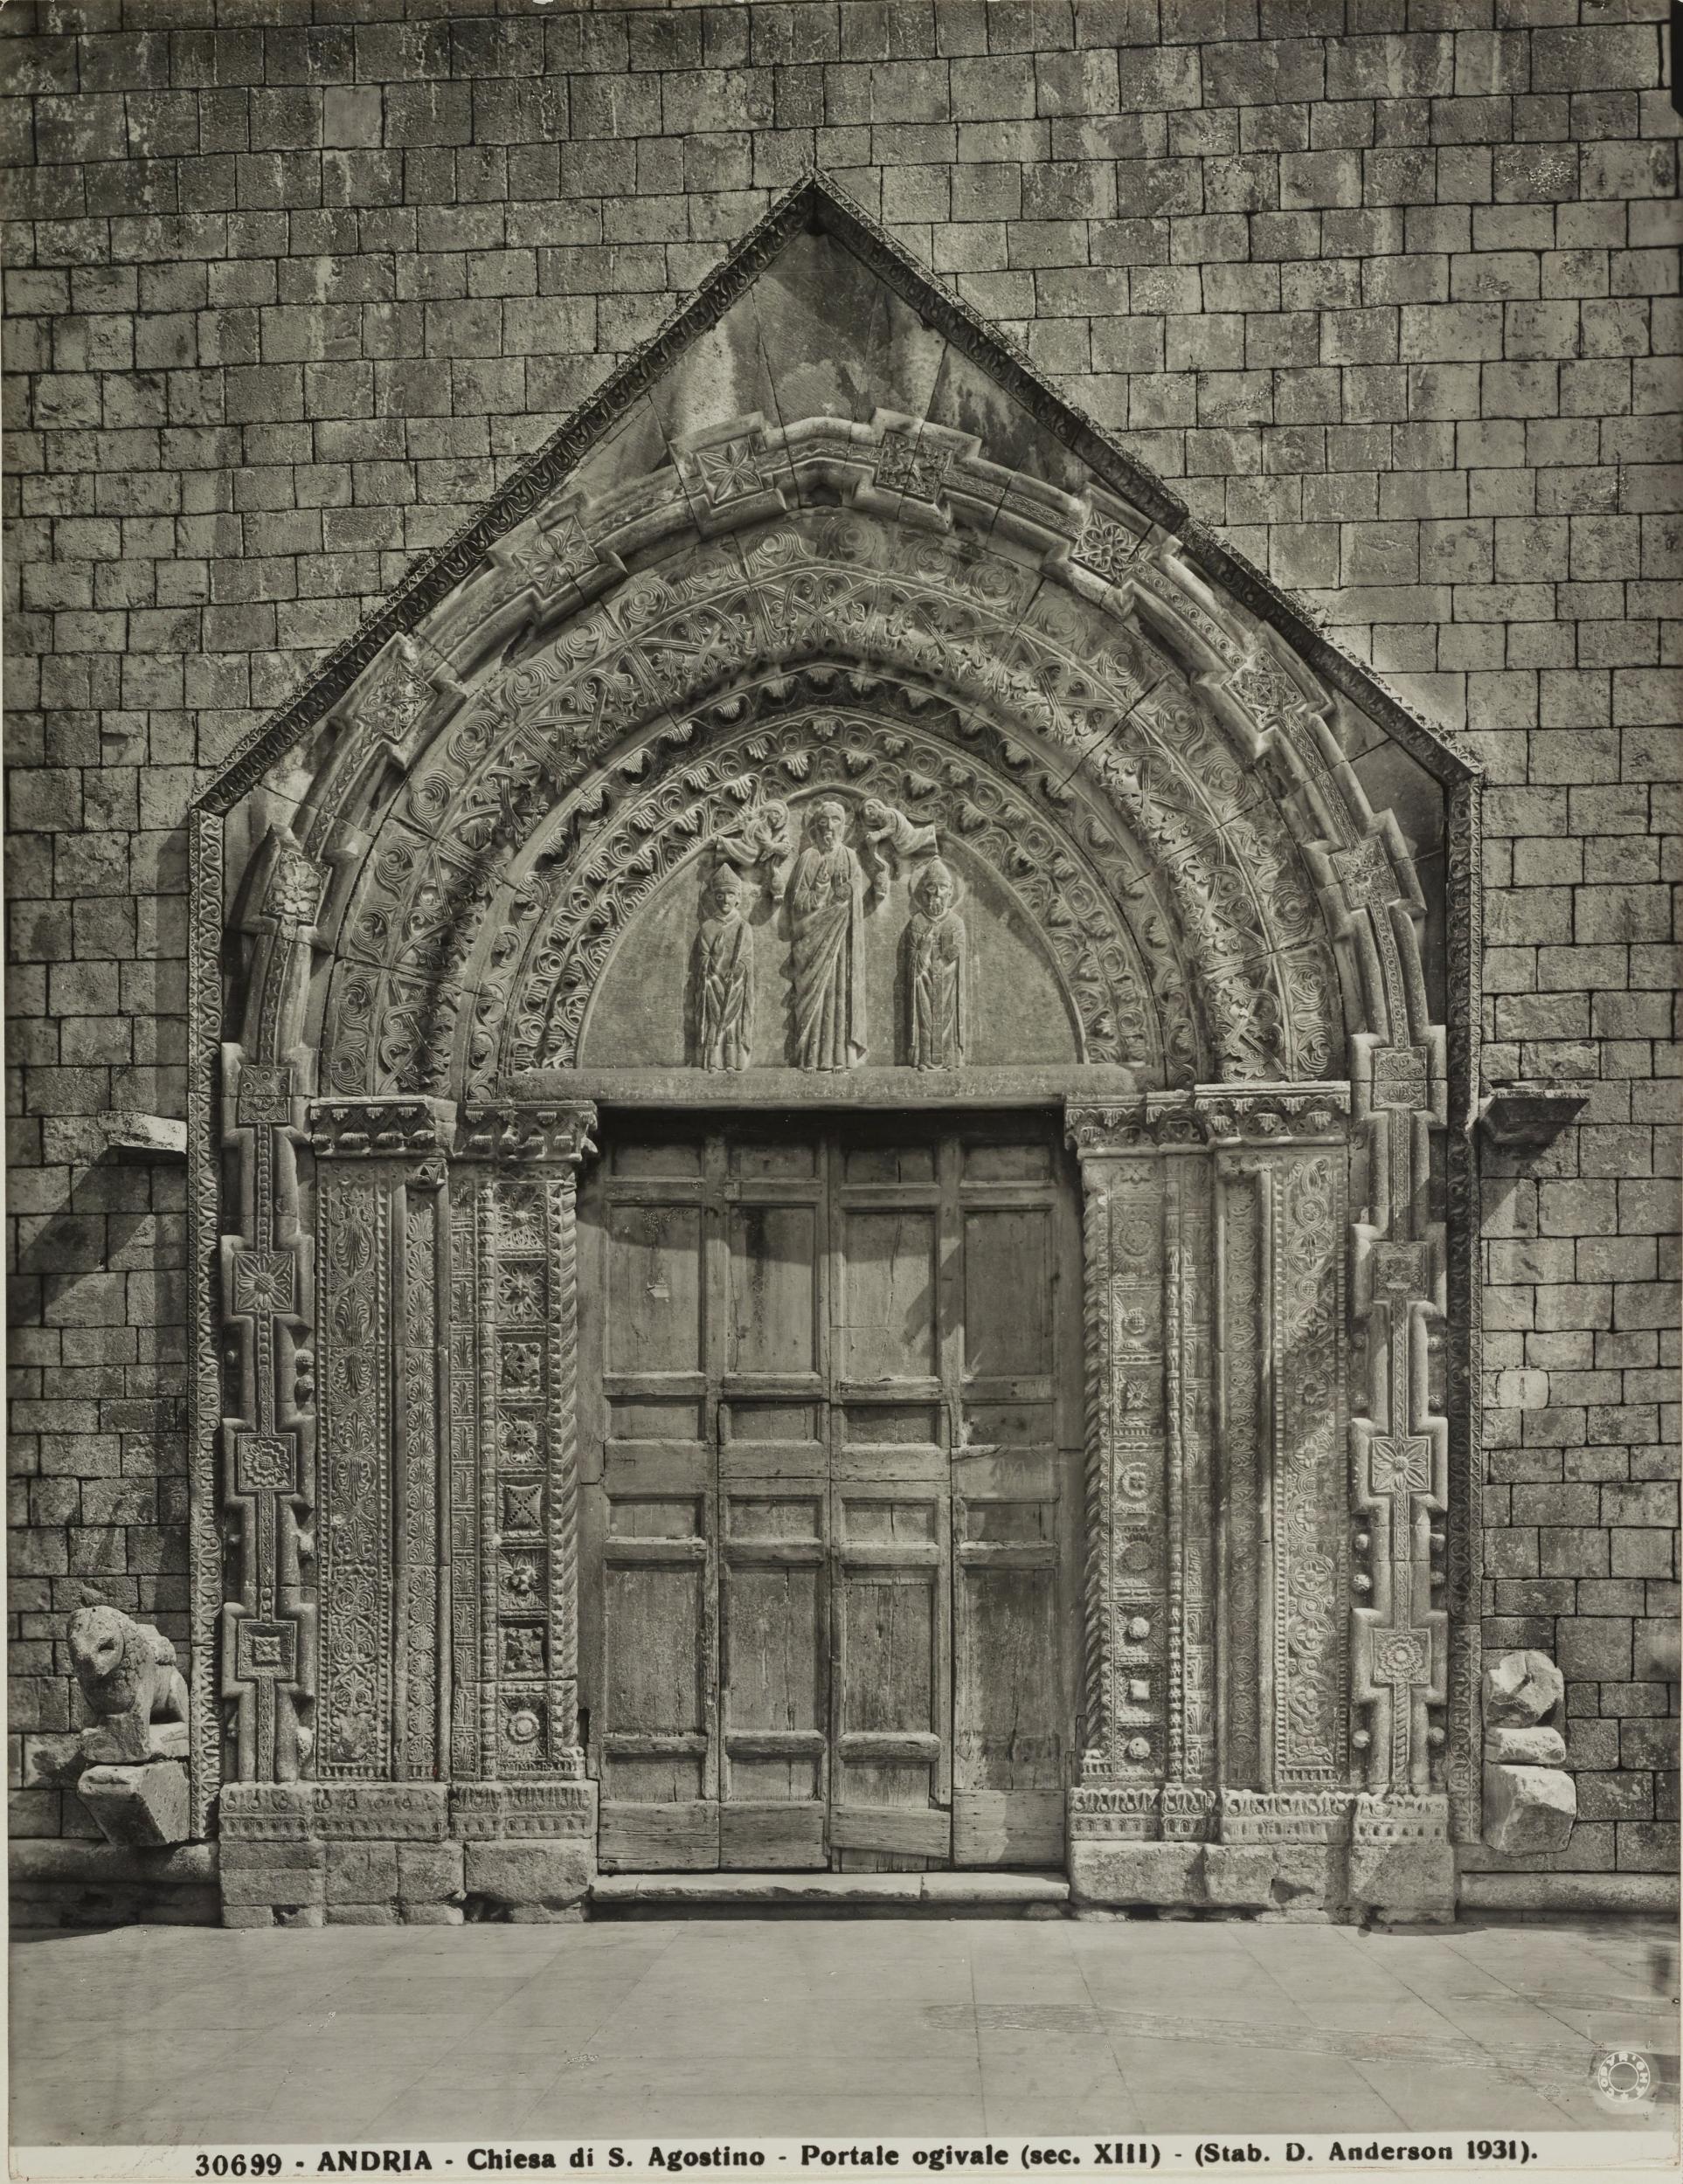 Fratelli Alinari, Andria - Chiesa di S. Agostino, portale, 1901-2000, gelatina ai sali d'argento/carta, MPI131841